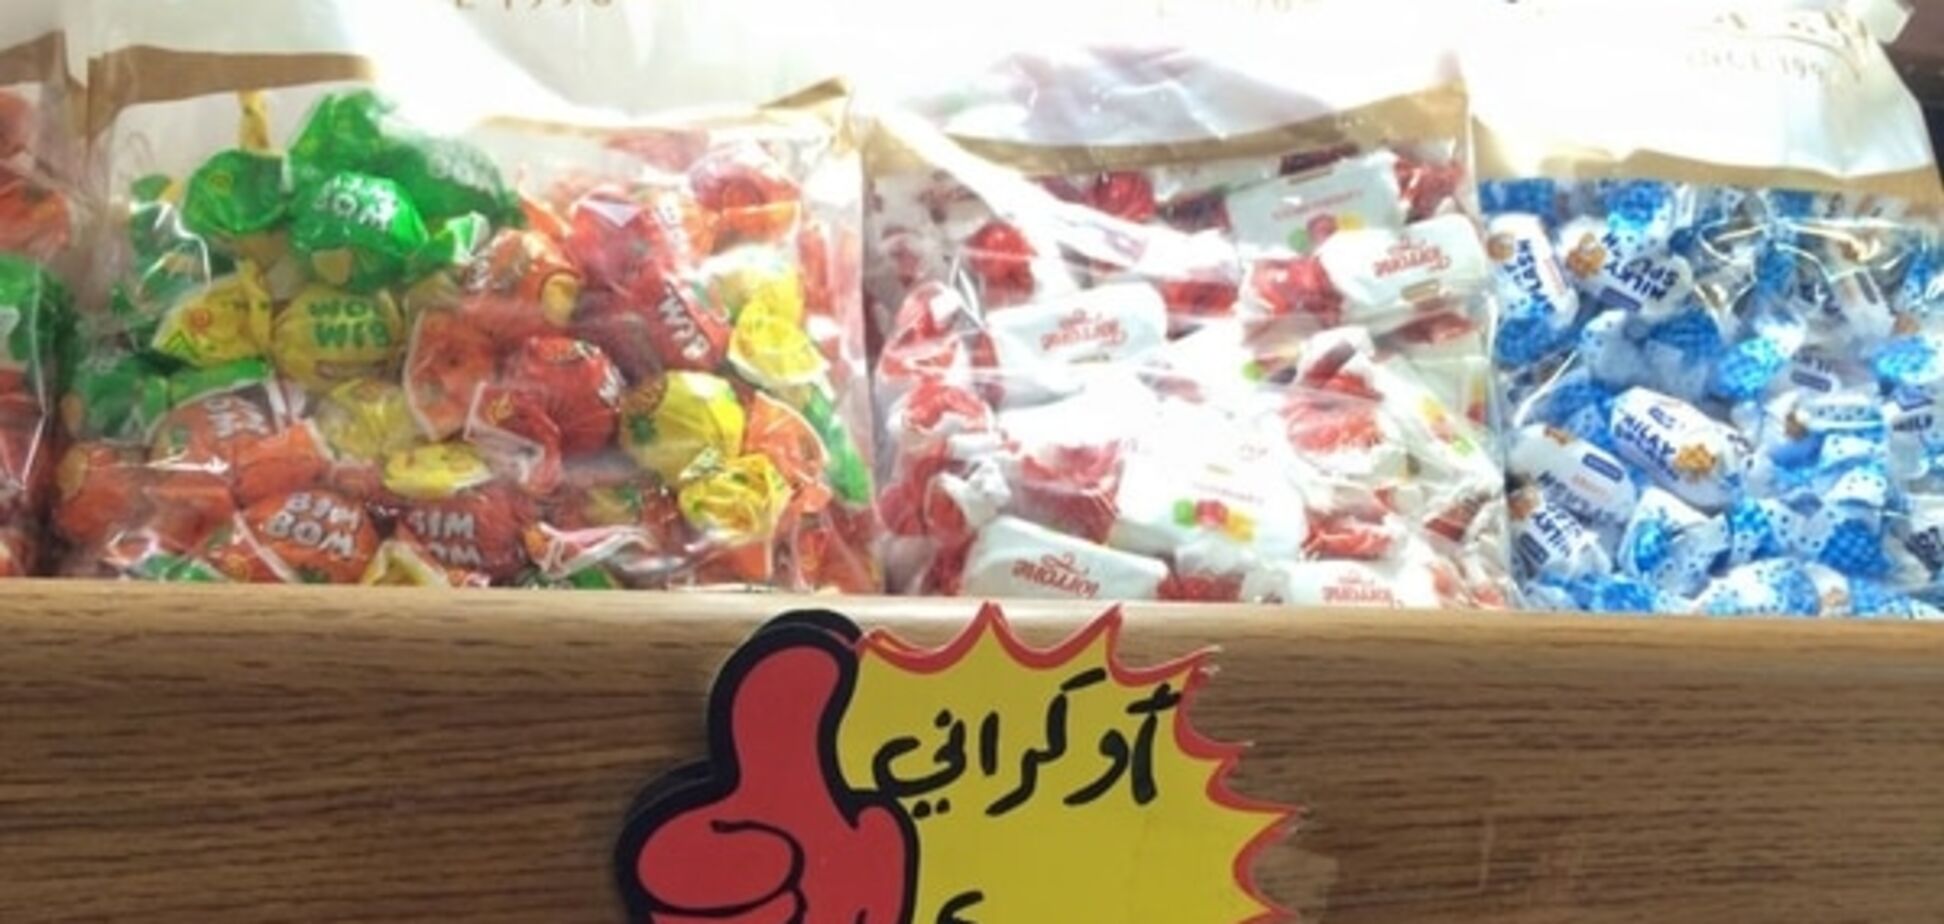 Журналіст знайшов цукерки 'Рошен' за 2 км від Сирії, яка воює: фотофакт